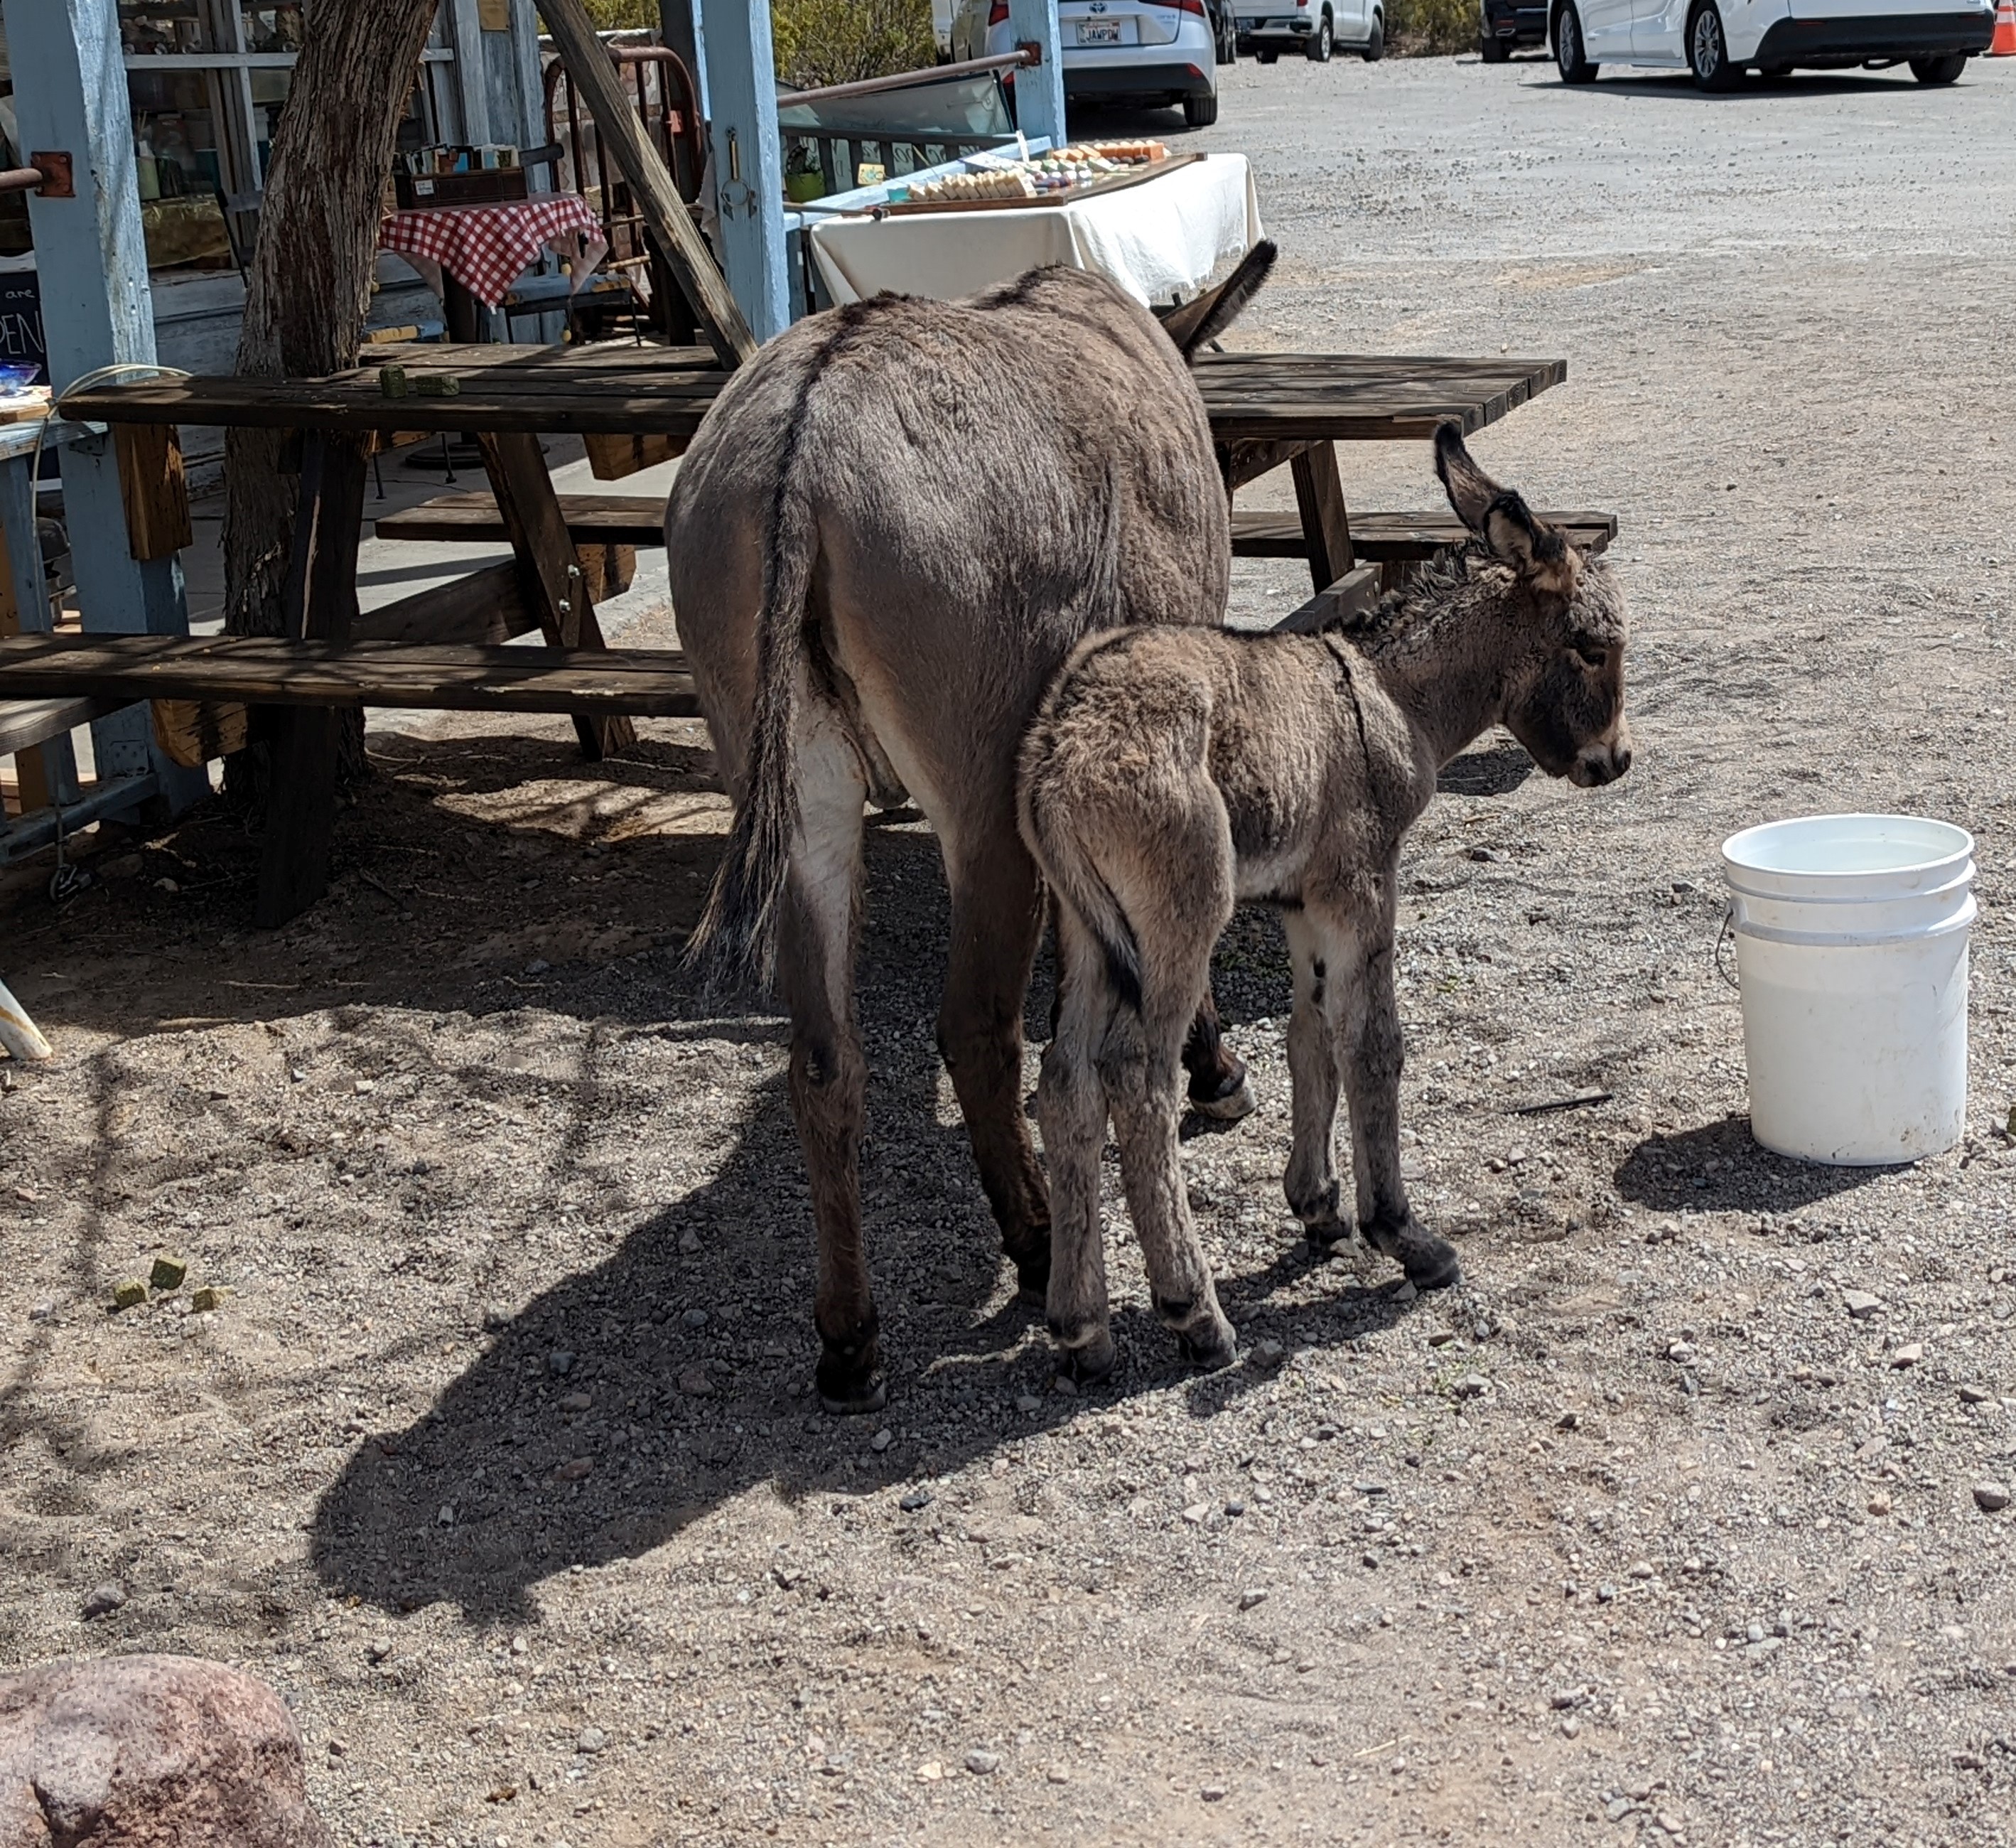 The burros I saw